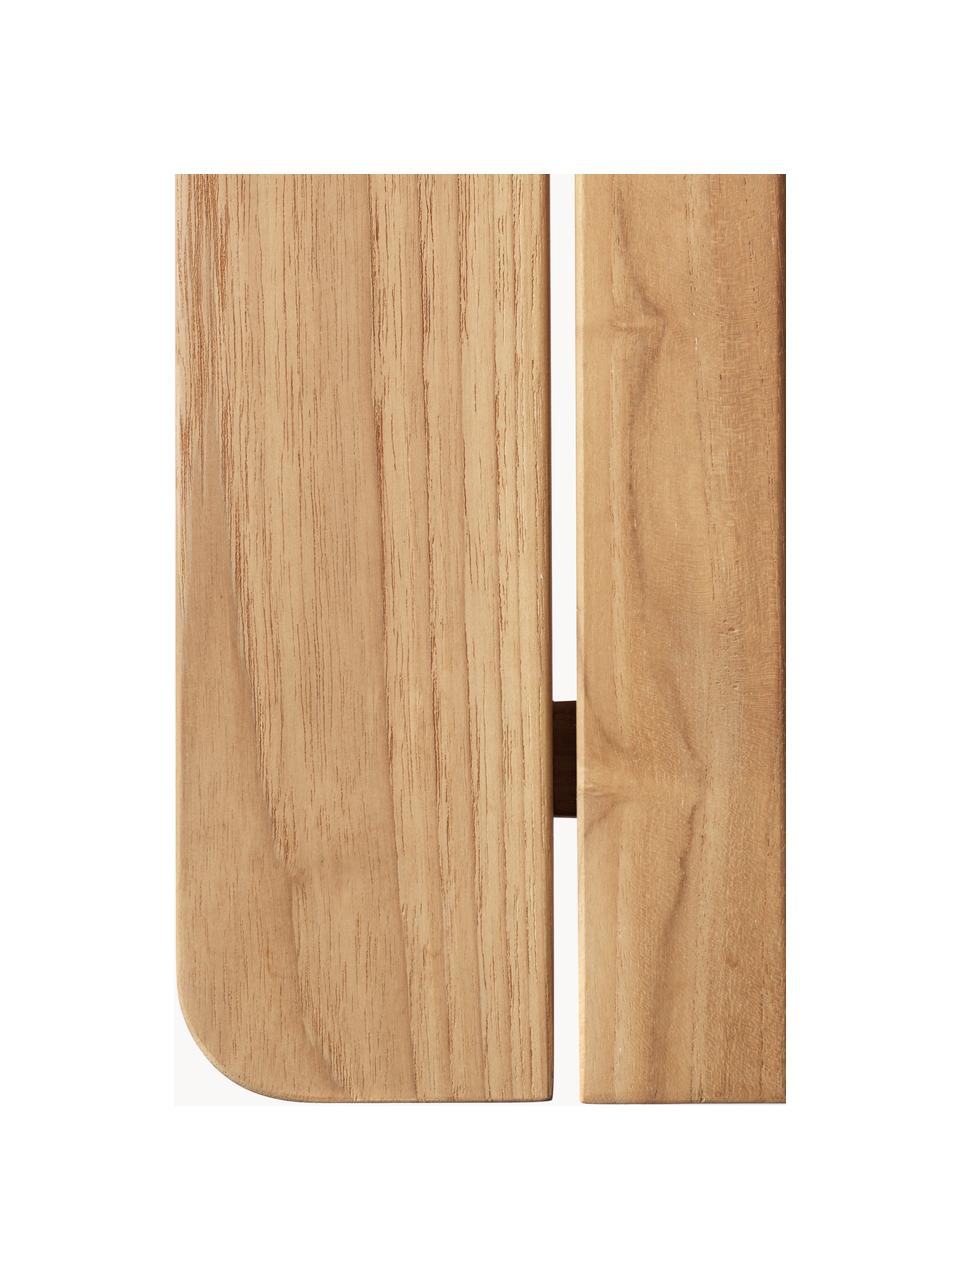 Tavolino da giardino in legno di teak Sammen, Legno di teack

Questo prodotto è realizzato con legno di provenienza sostenibile e certificato FSC®, Legno di teak, Larg. 62 x Prof. 62 cm